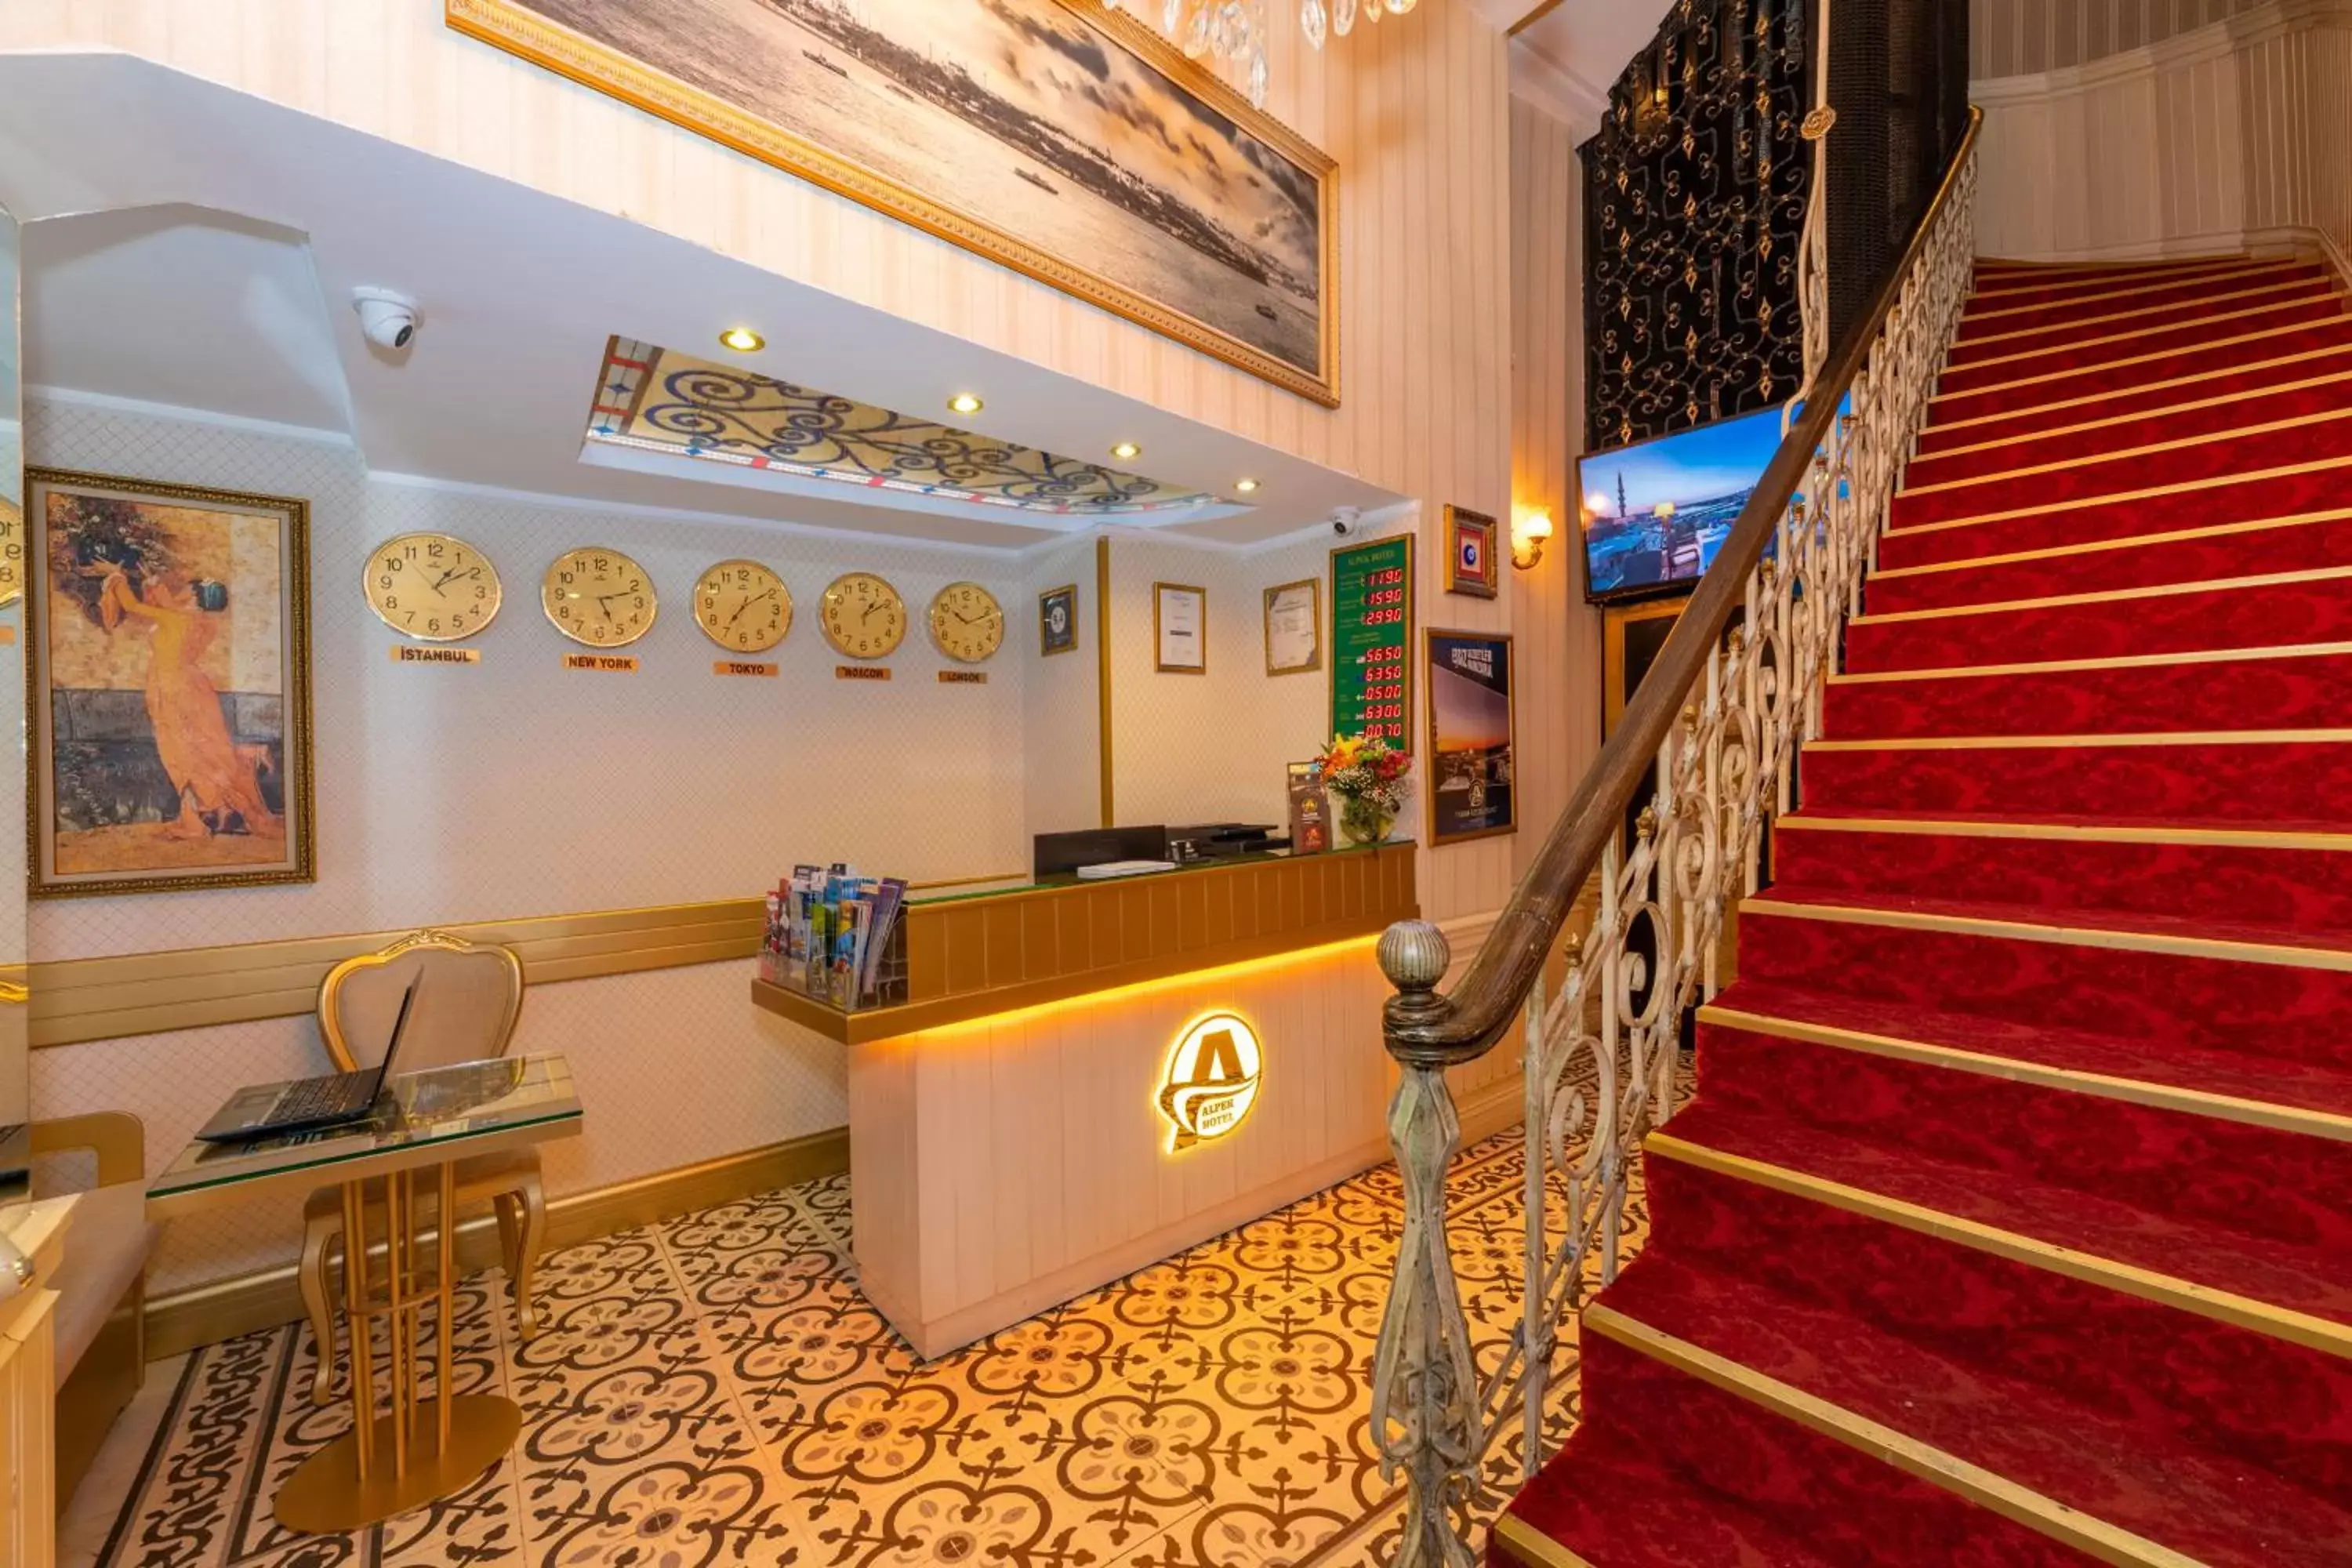 Lobby or reception, Lobby/Reception in Alpek Hotel